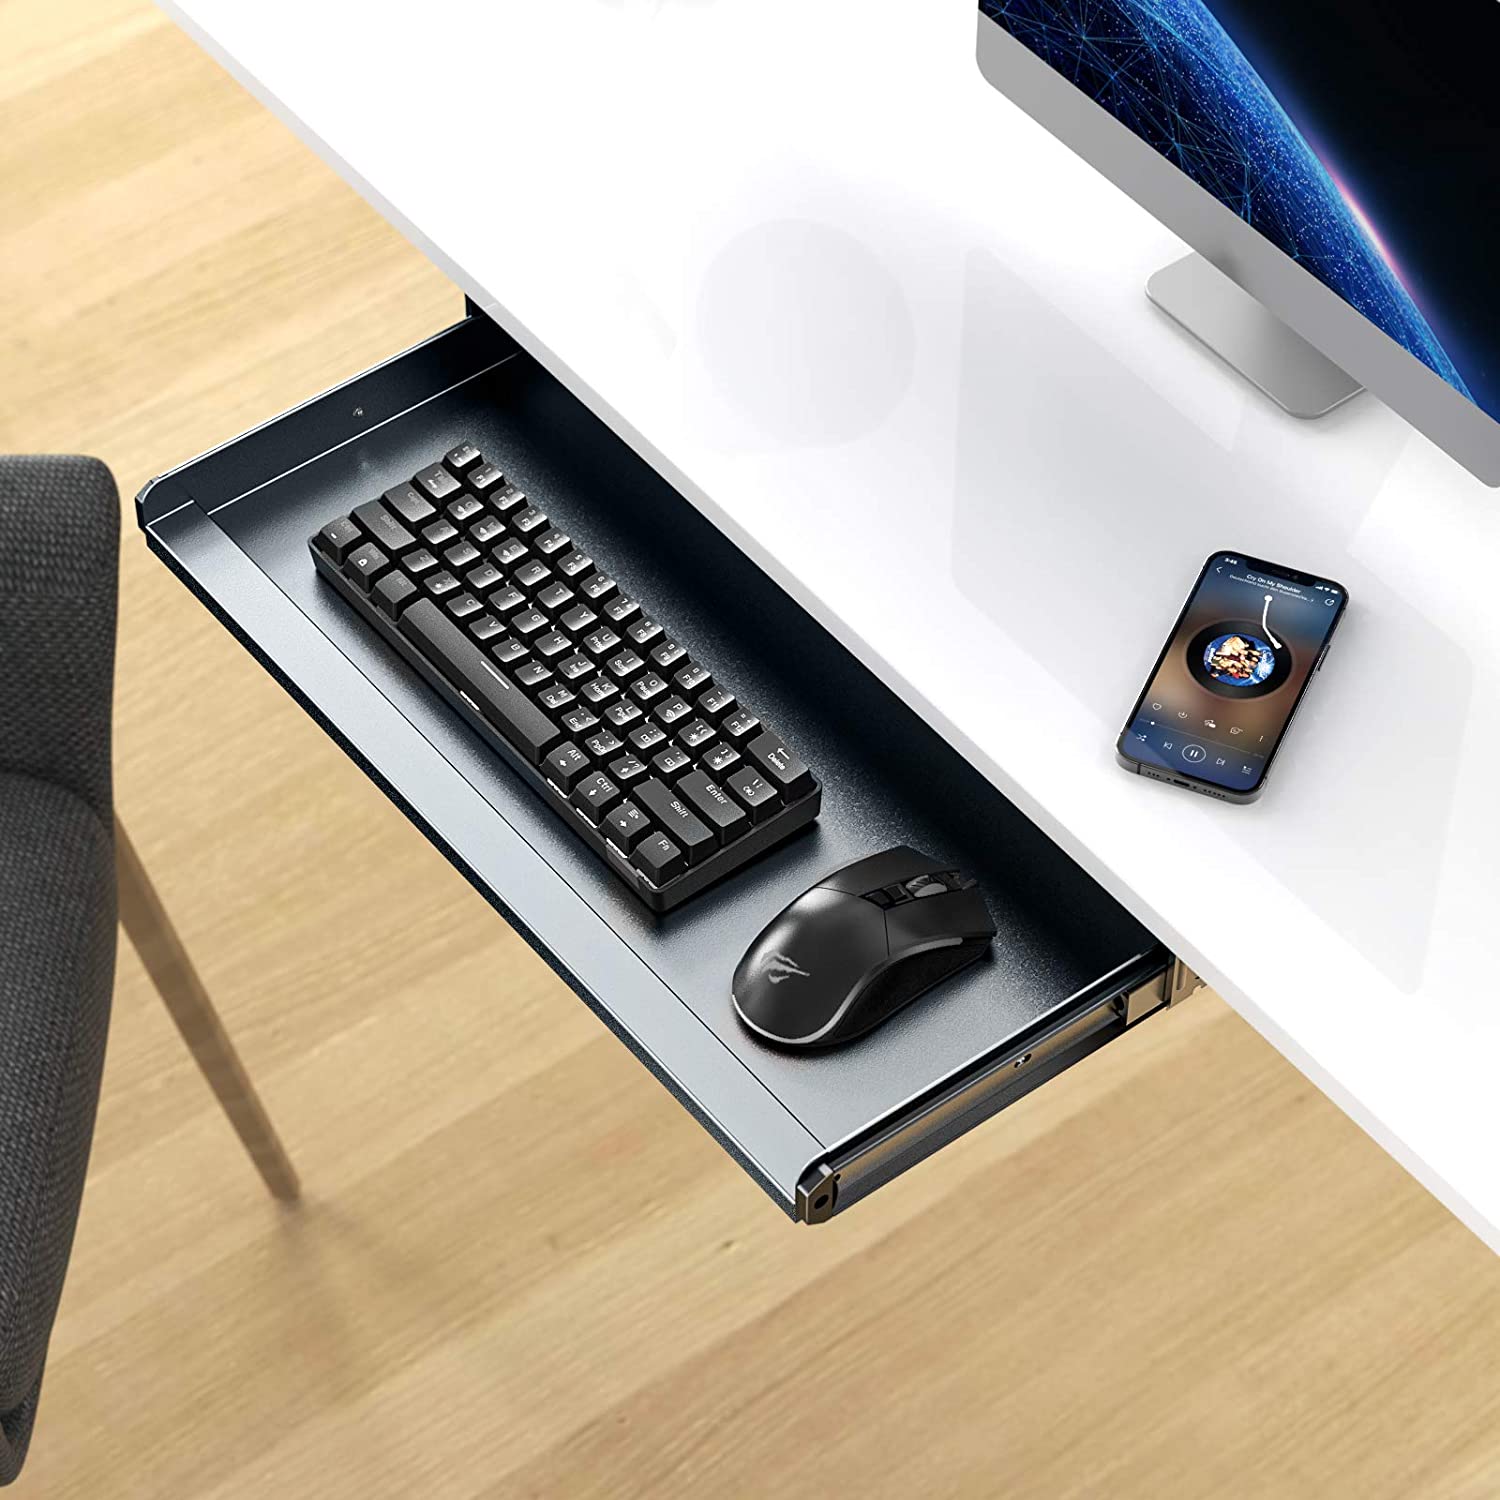 HAVIT HV-KT2201 Keyboard Tray Under Desk Drawer with Three Height Levels & Wrist Rest